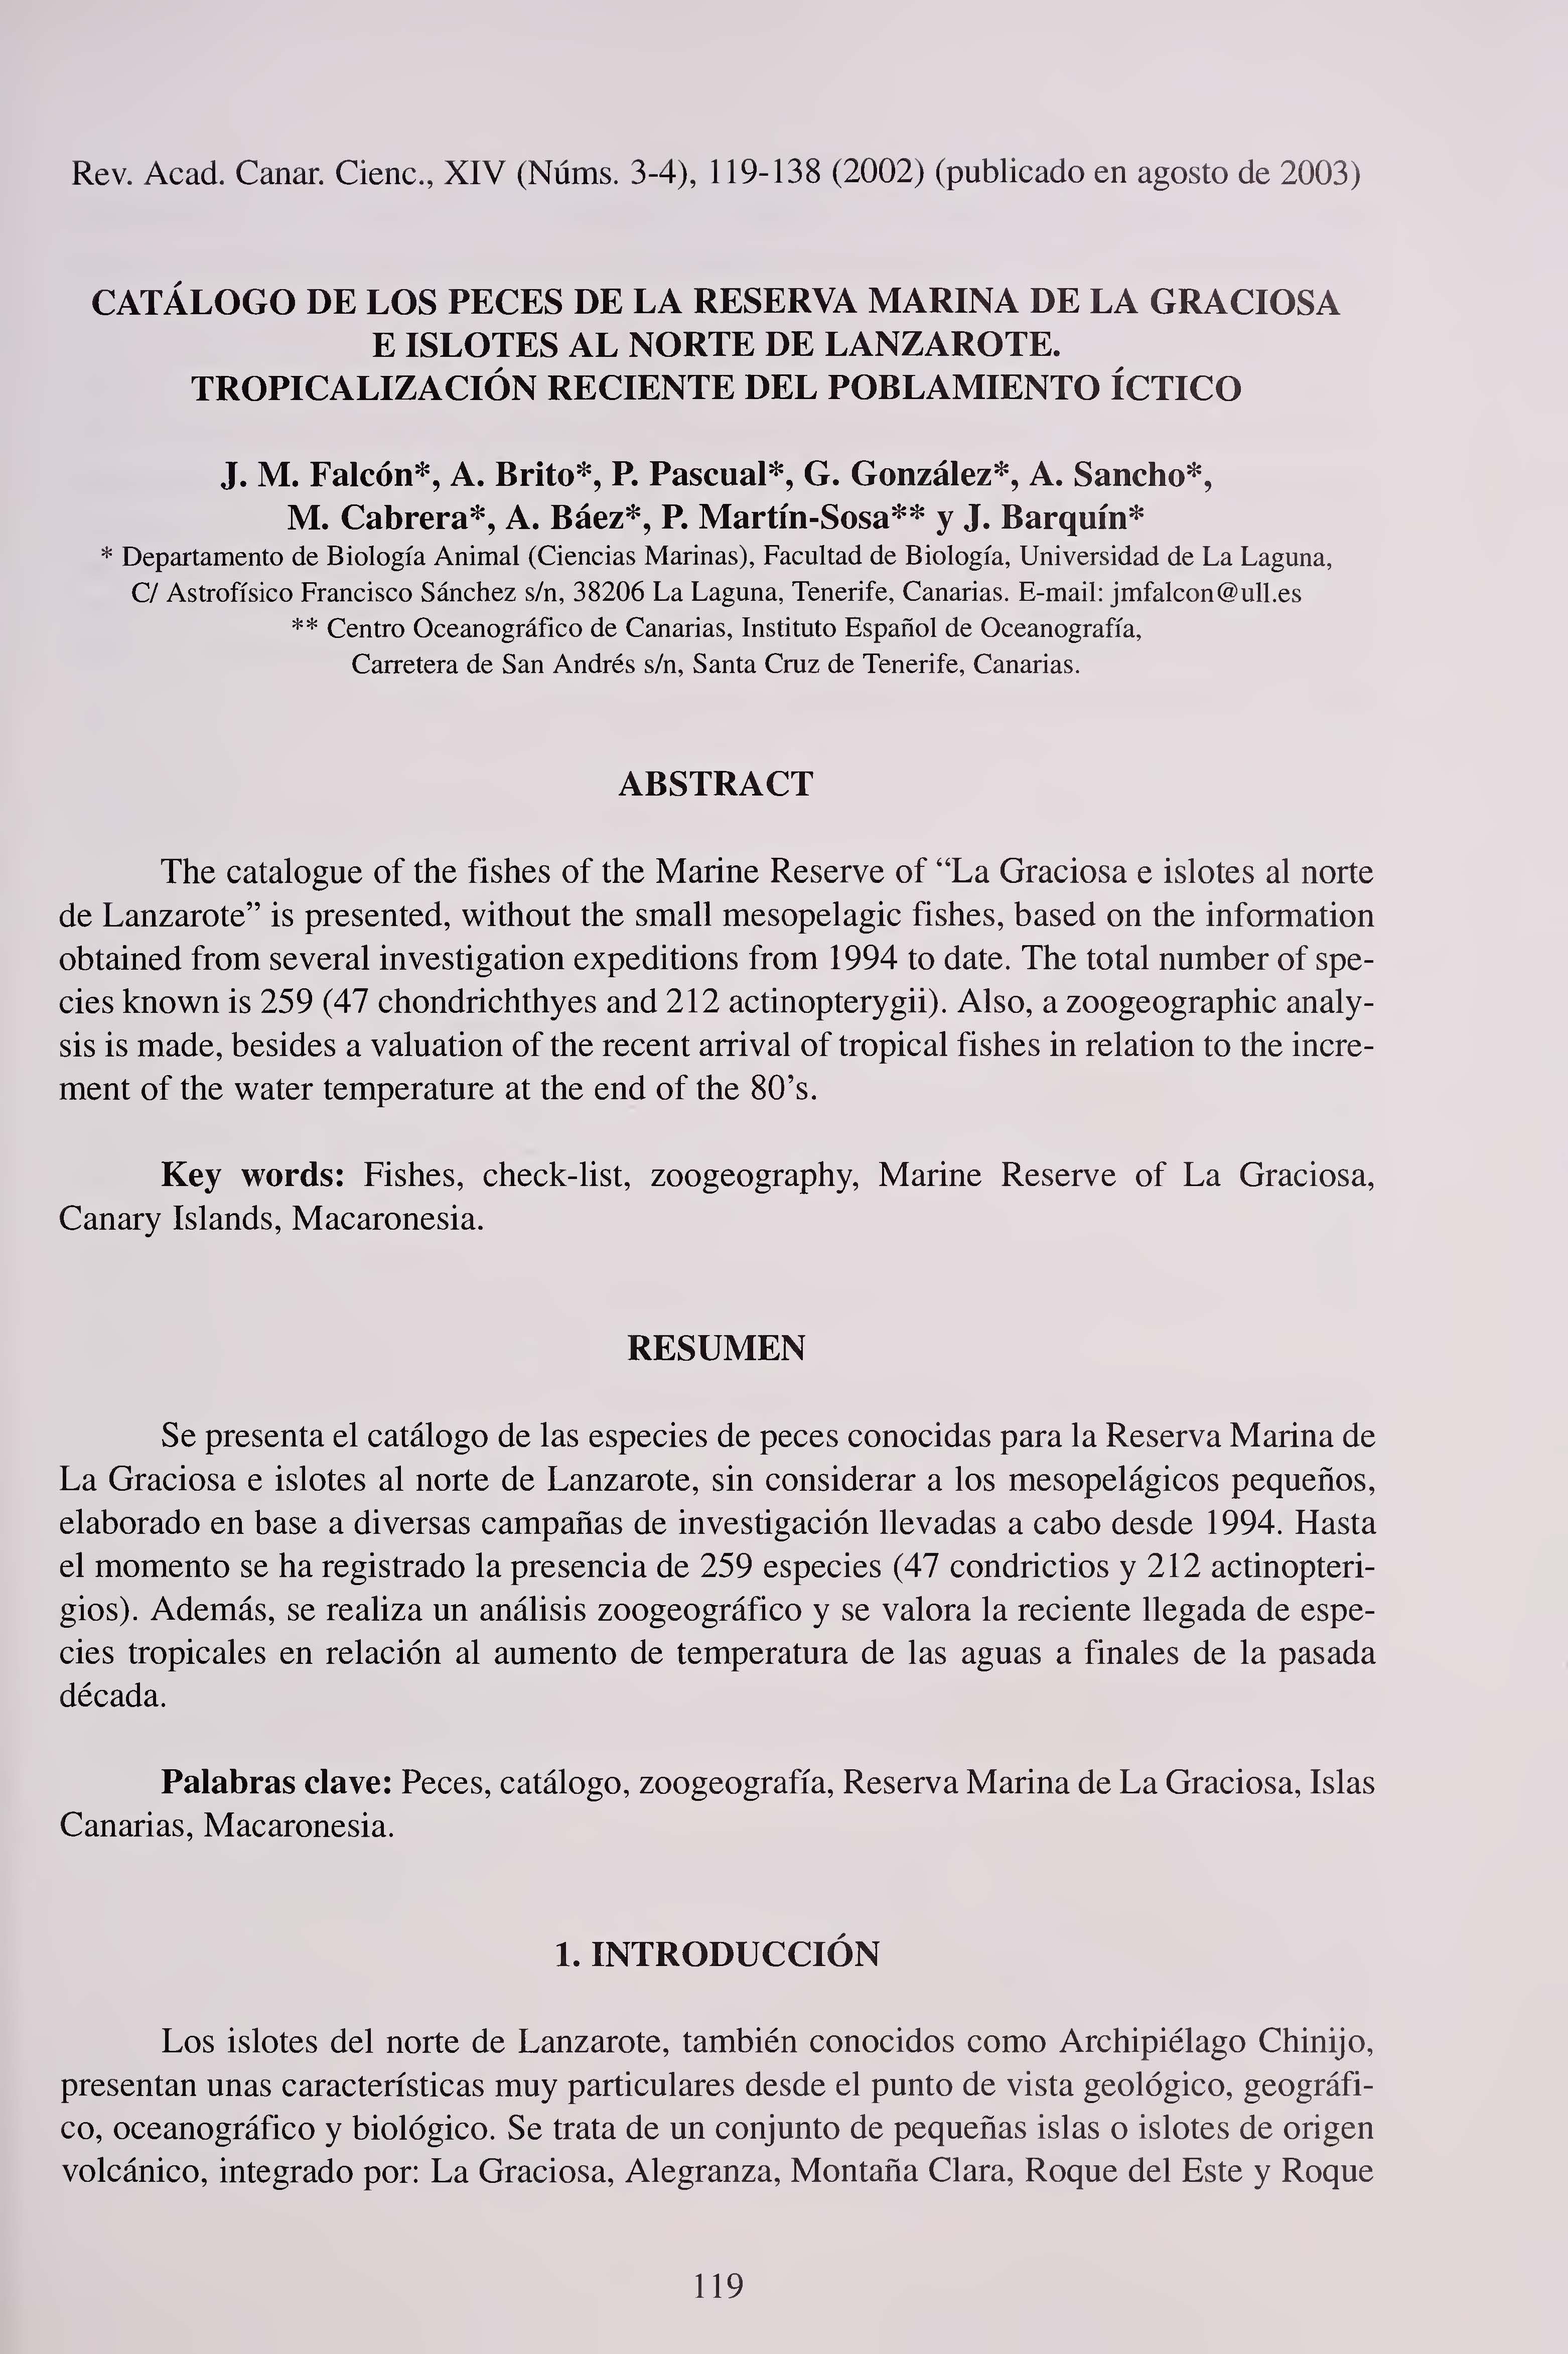 Catálogo de los peces de la reserva marina de La Graciosa e islotes al norte de Lanzarote: tropicalización reciente del poblamiento íctico